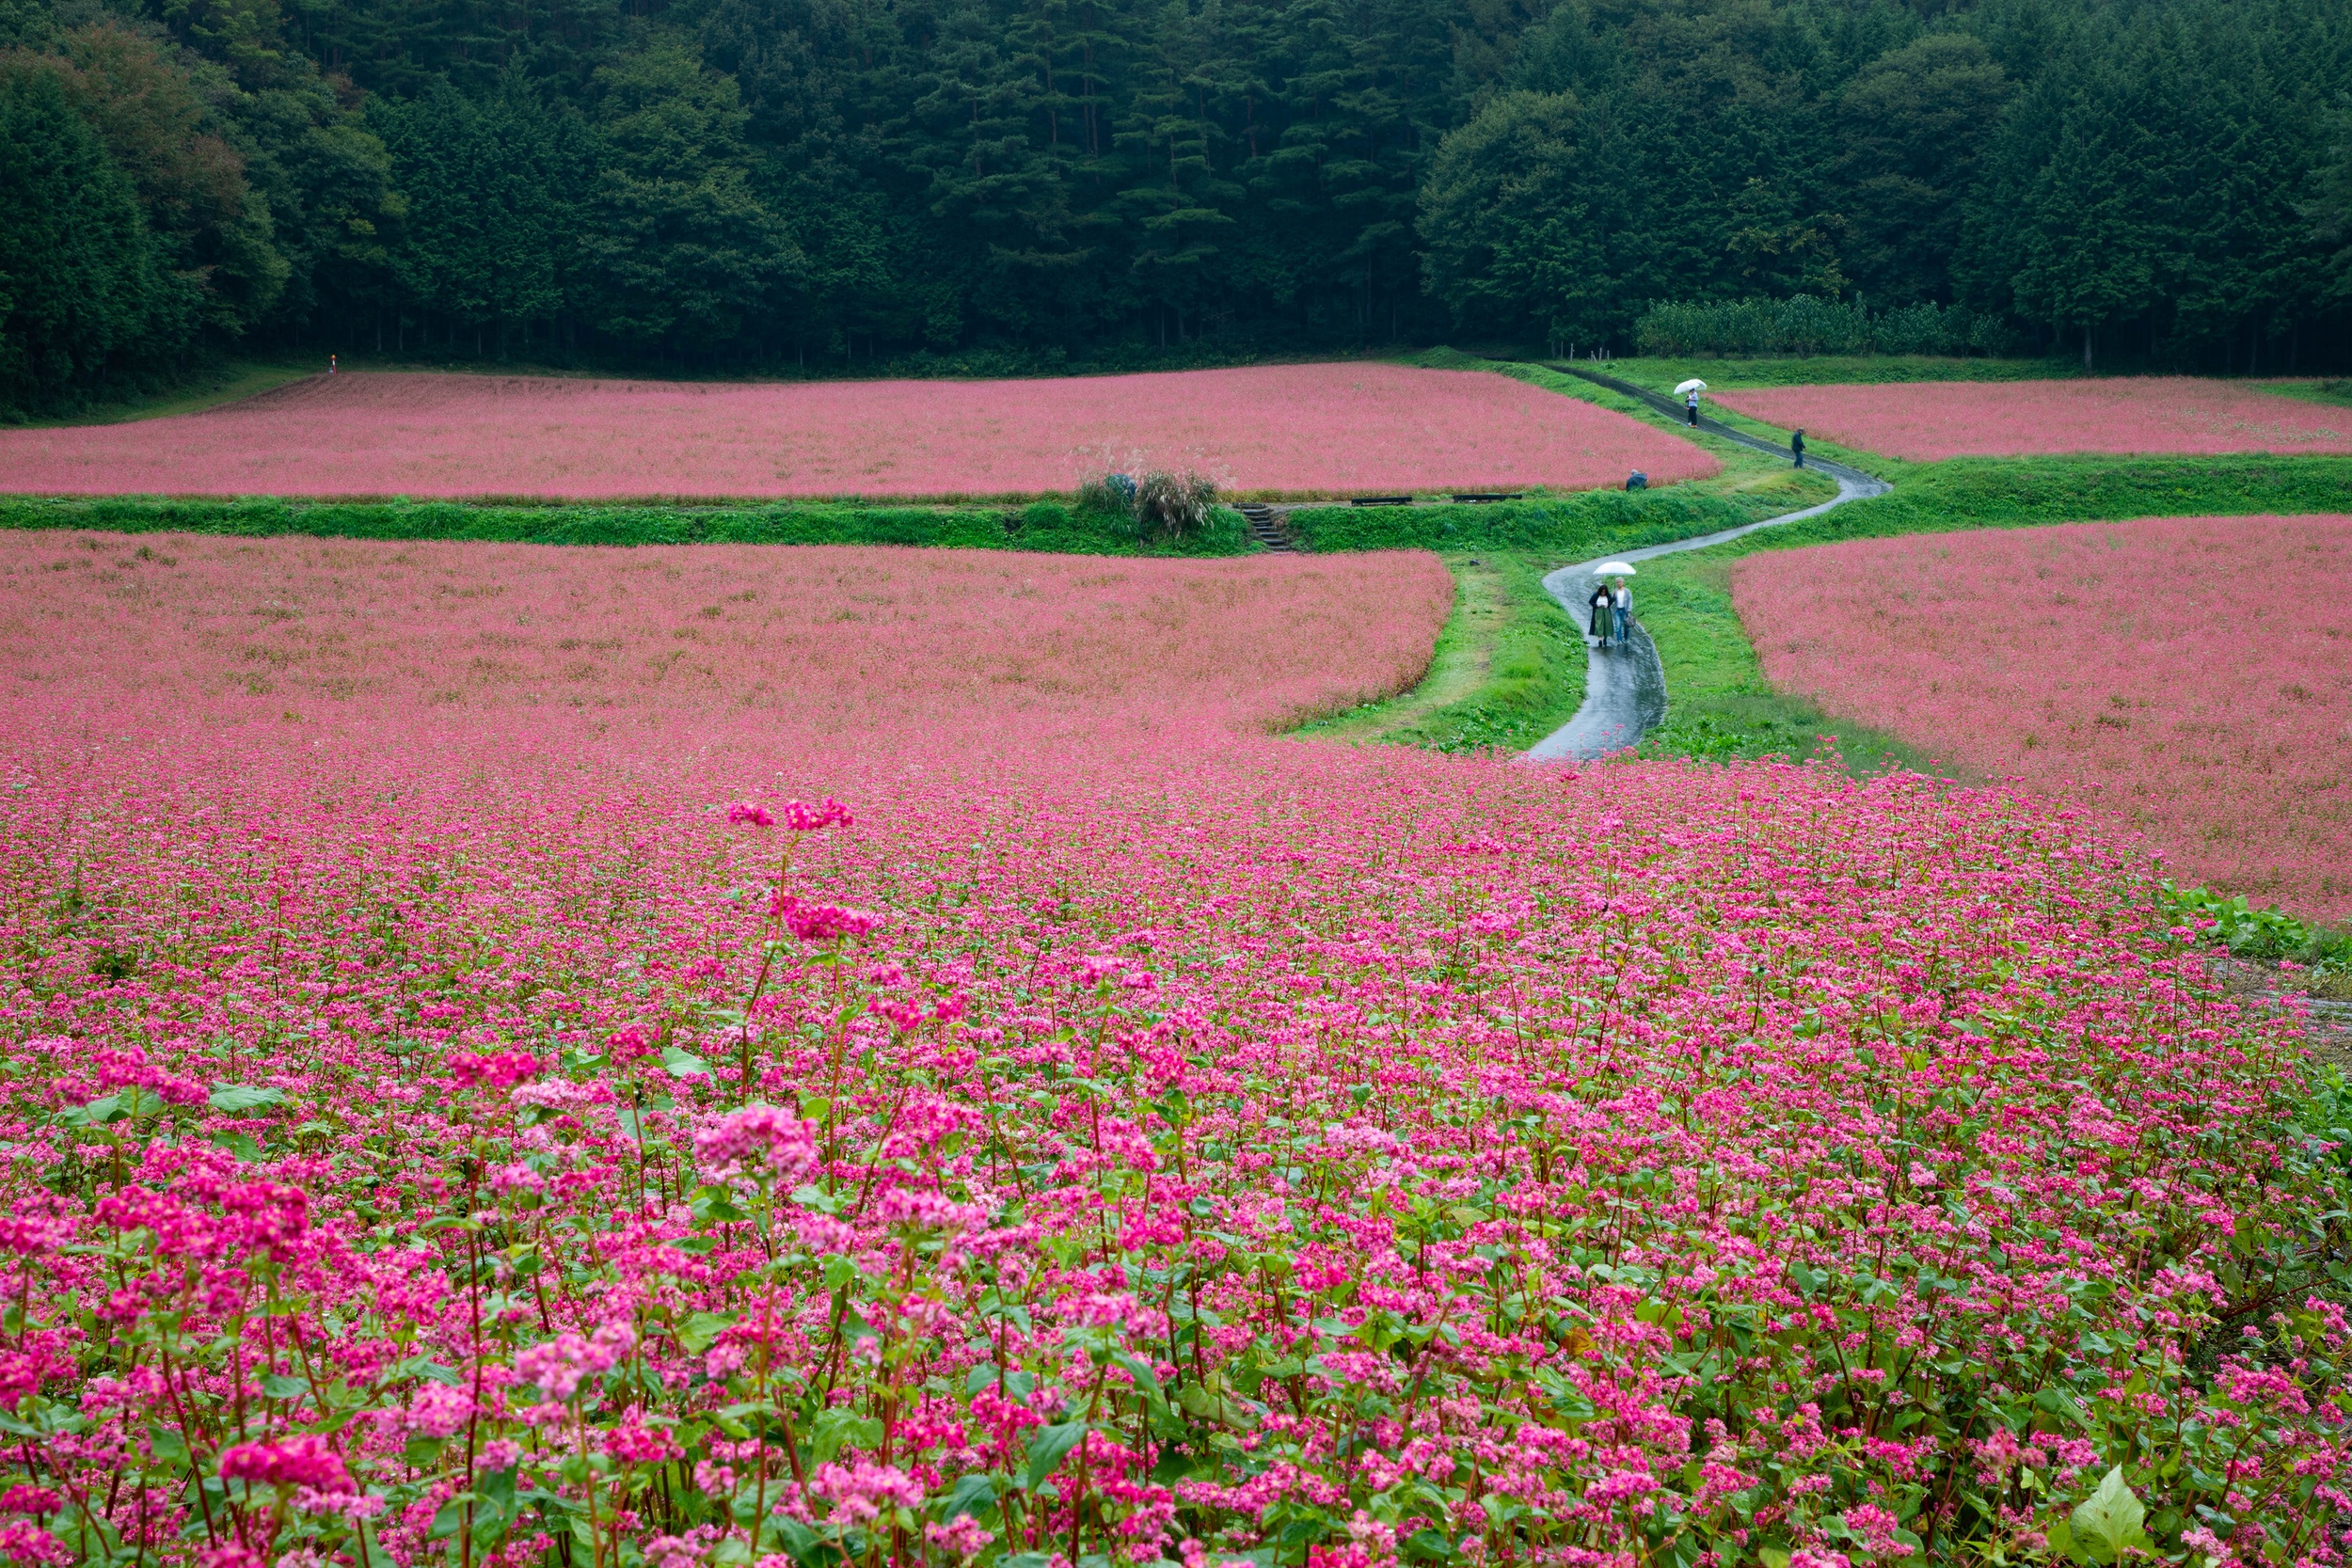 Red Buckwheat fields in Japan.